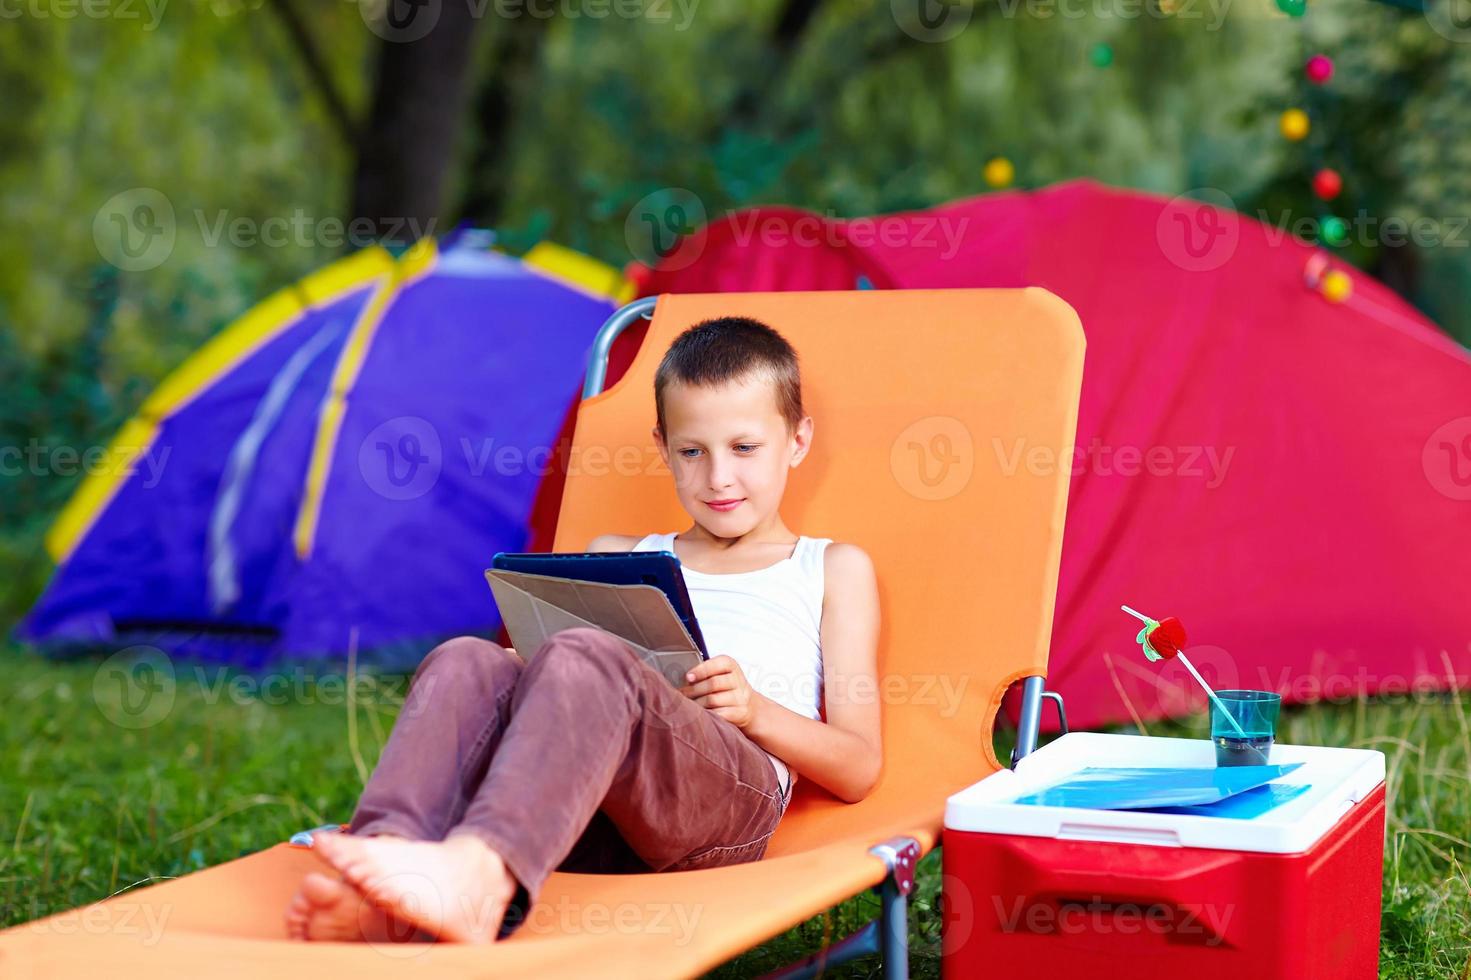 jovem rapaz no acampamento de verão, relaxante com tablet foto